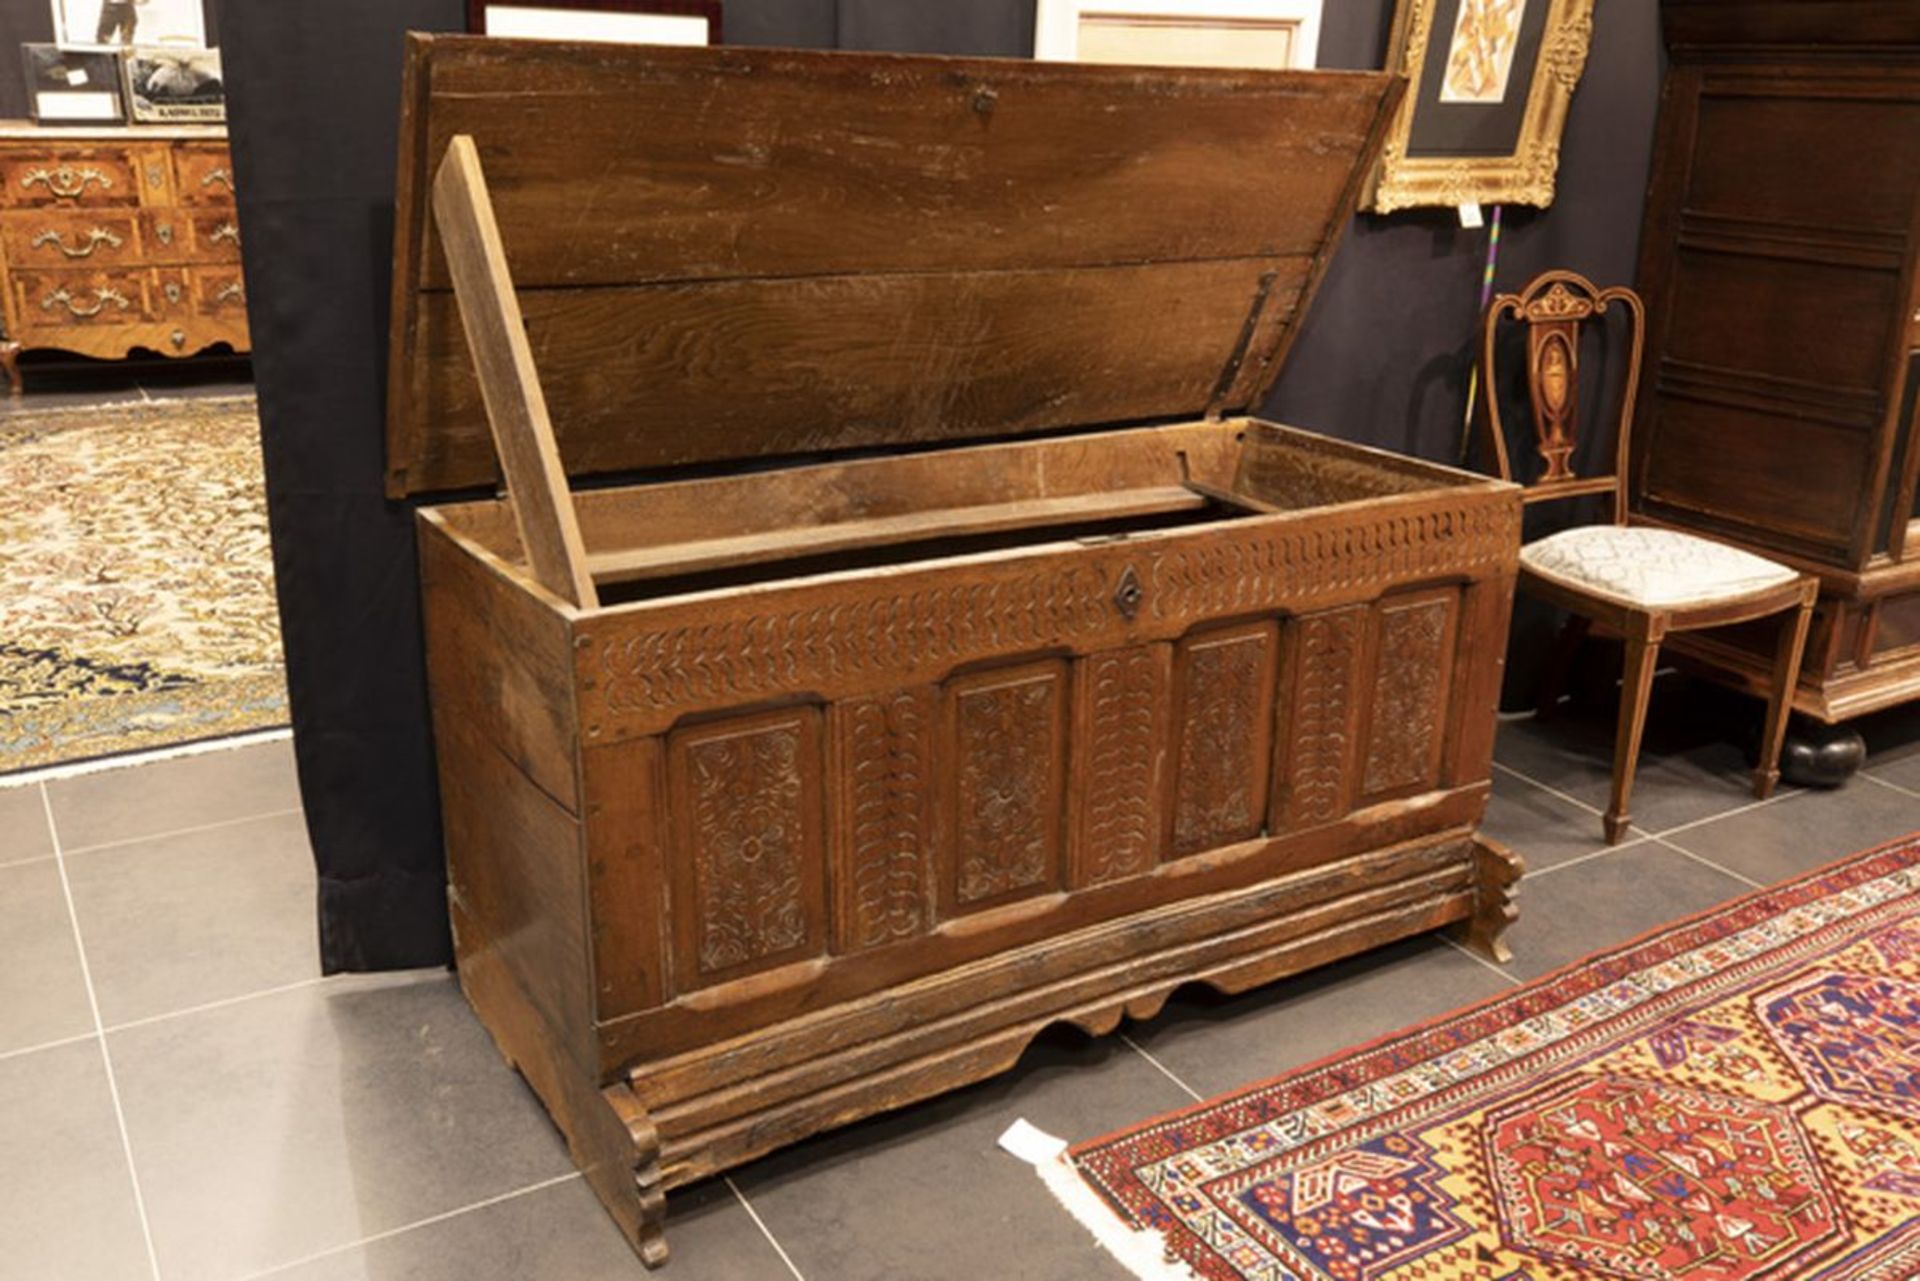 Achttiende eeuwse koffer in eik met front met vier panelen was ooit eigendom van [...] - Image 2 of 3